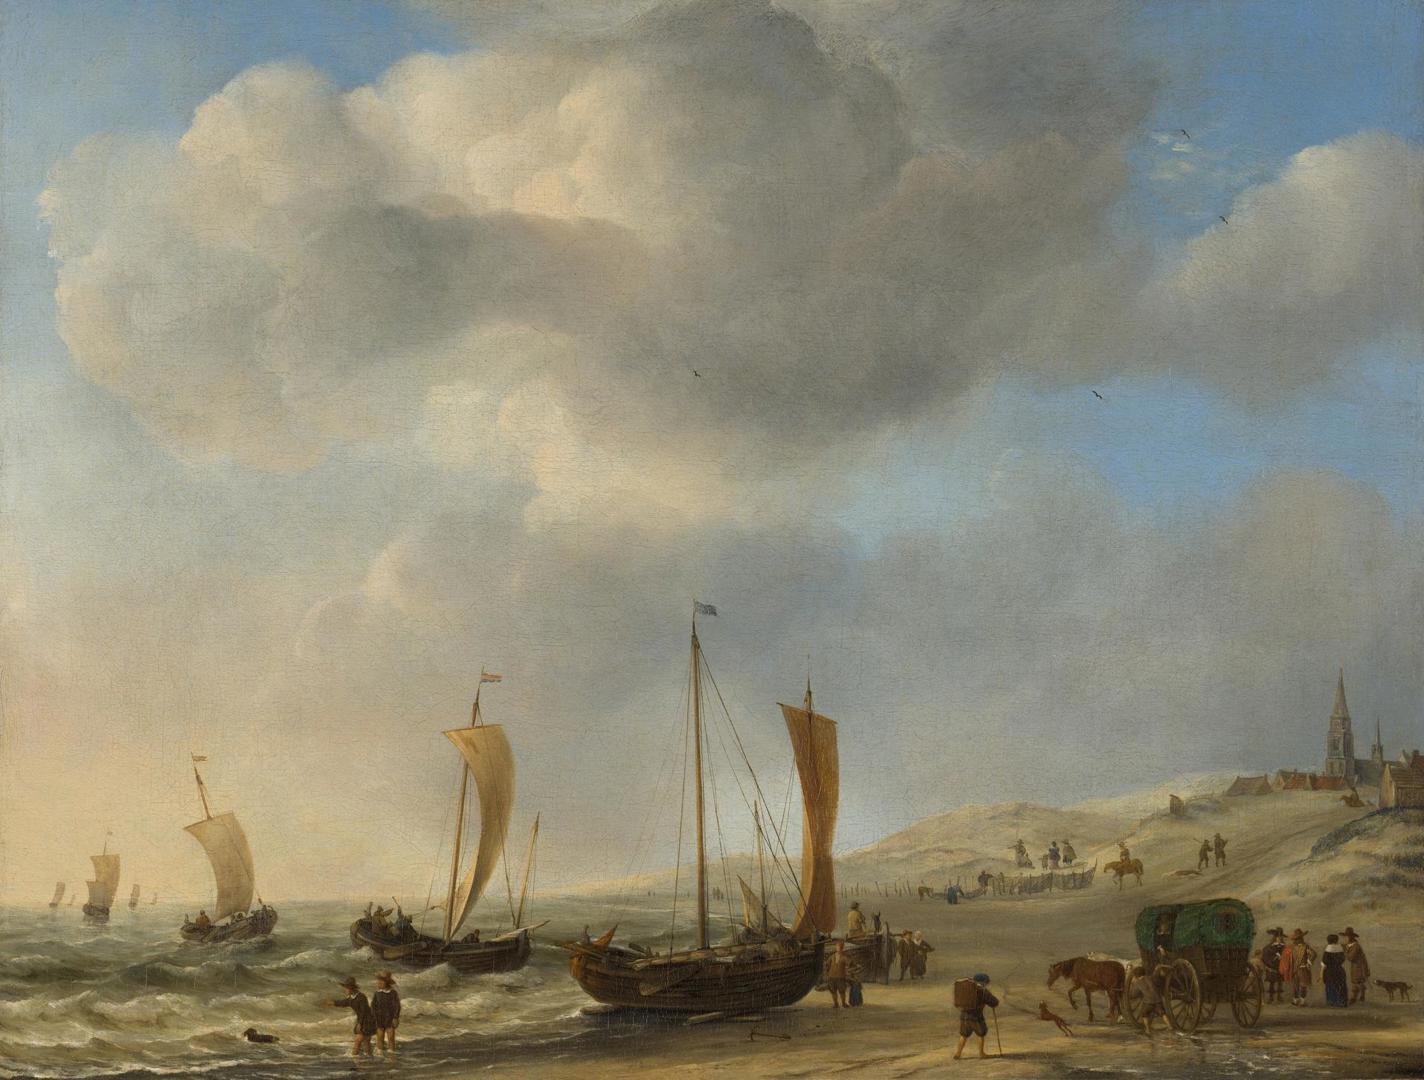 The Shore at Scheveningen by Willem van de Velde